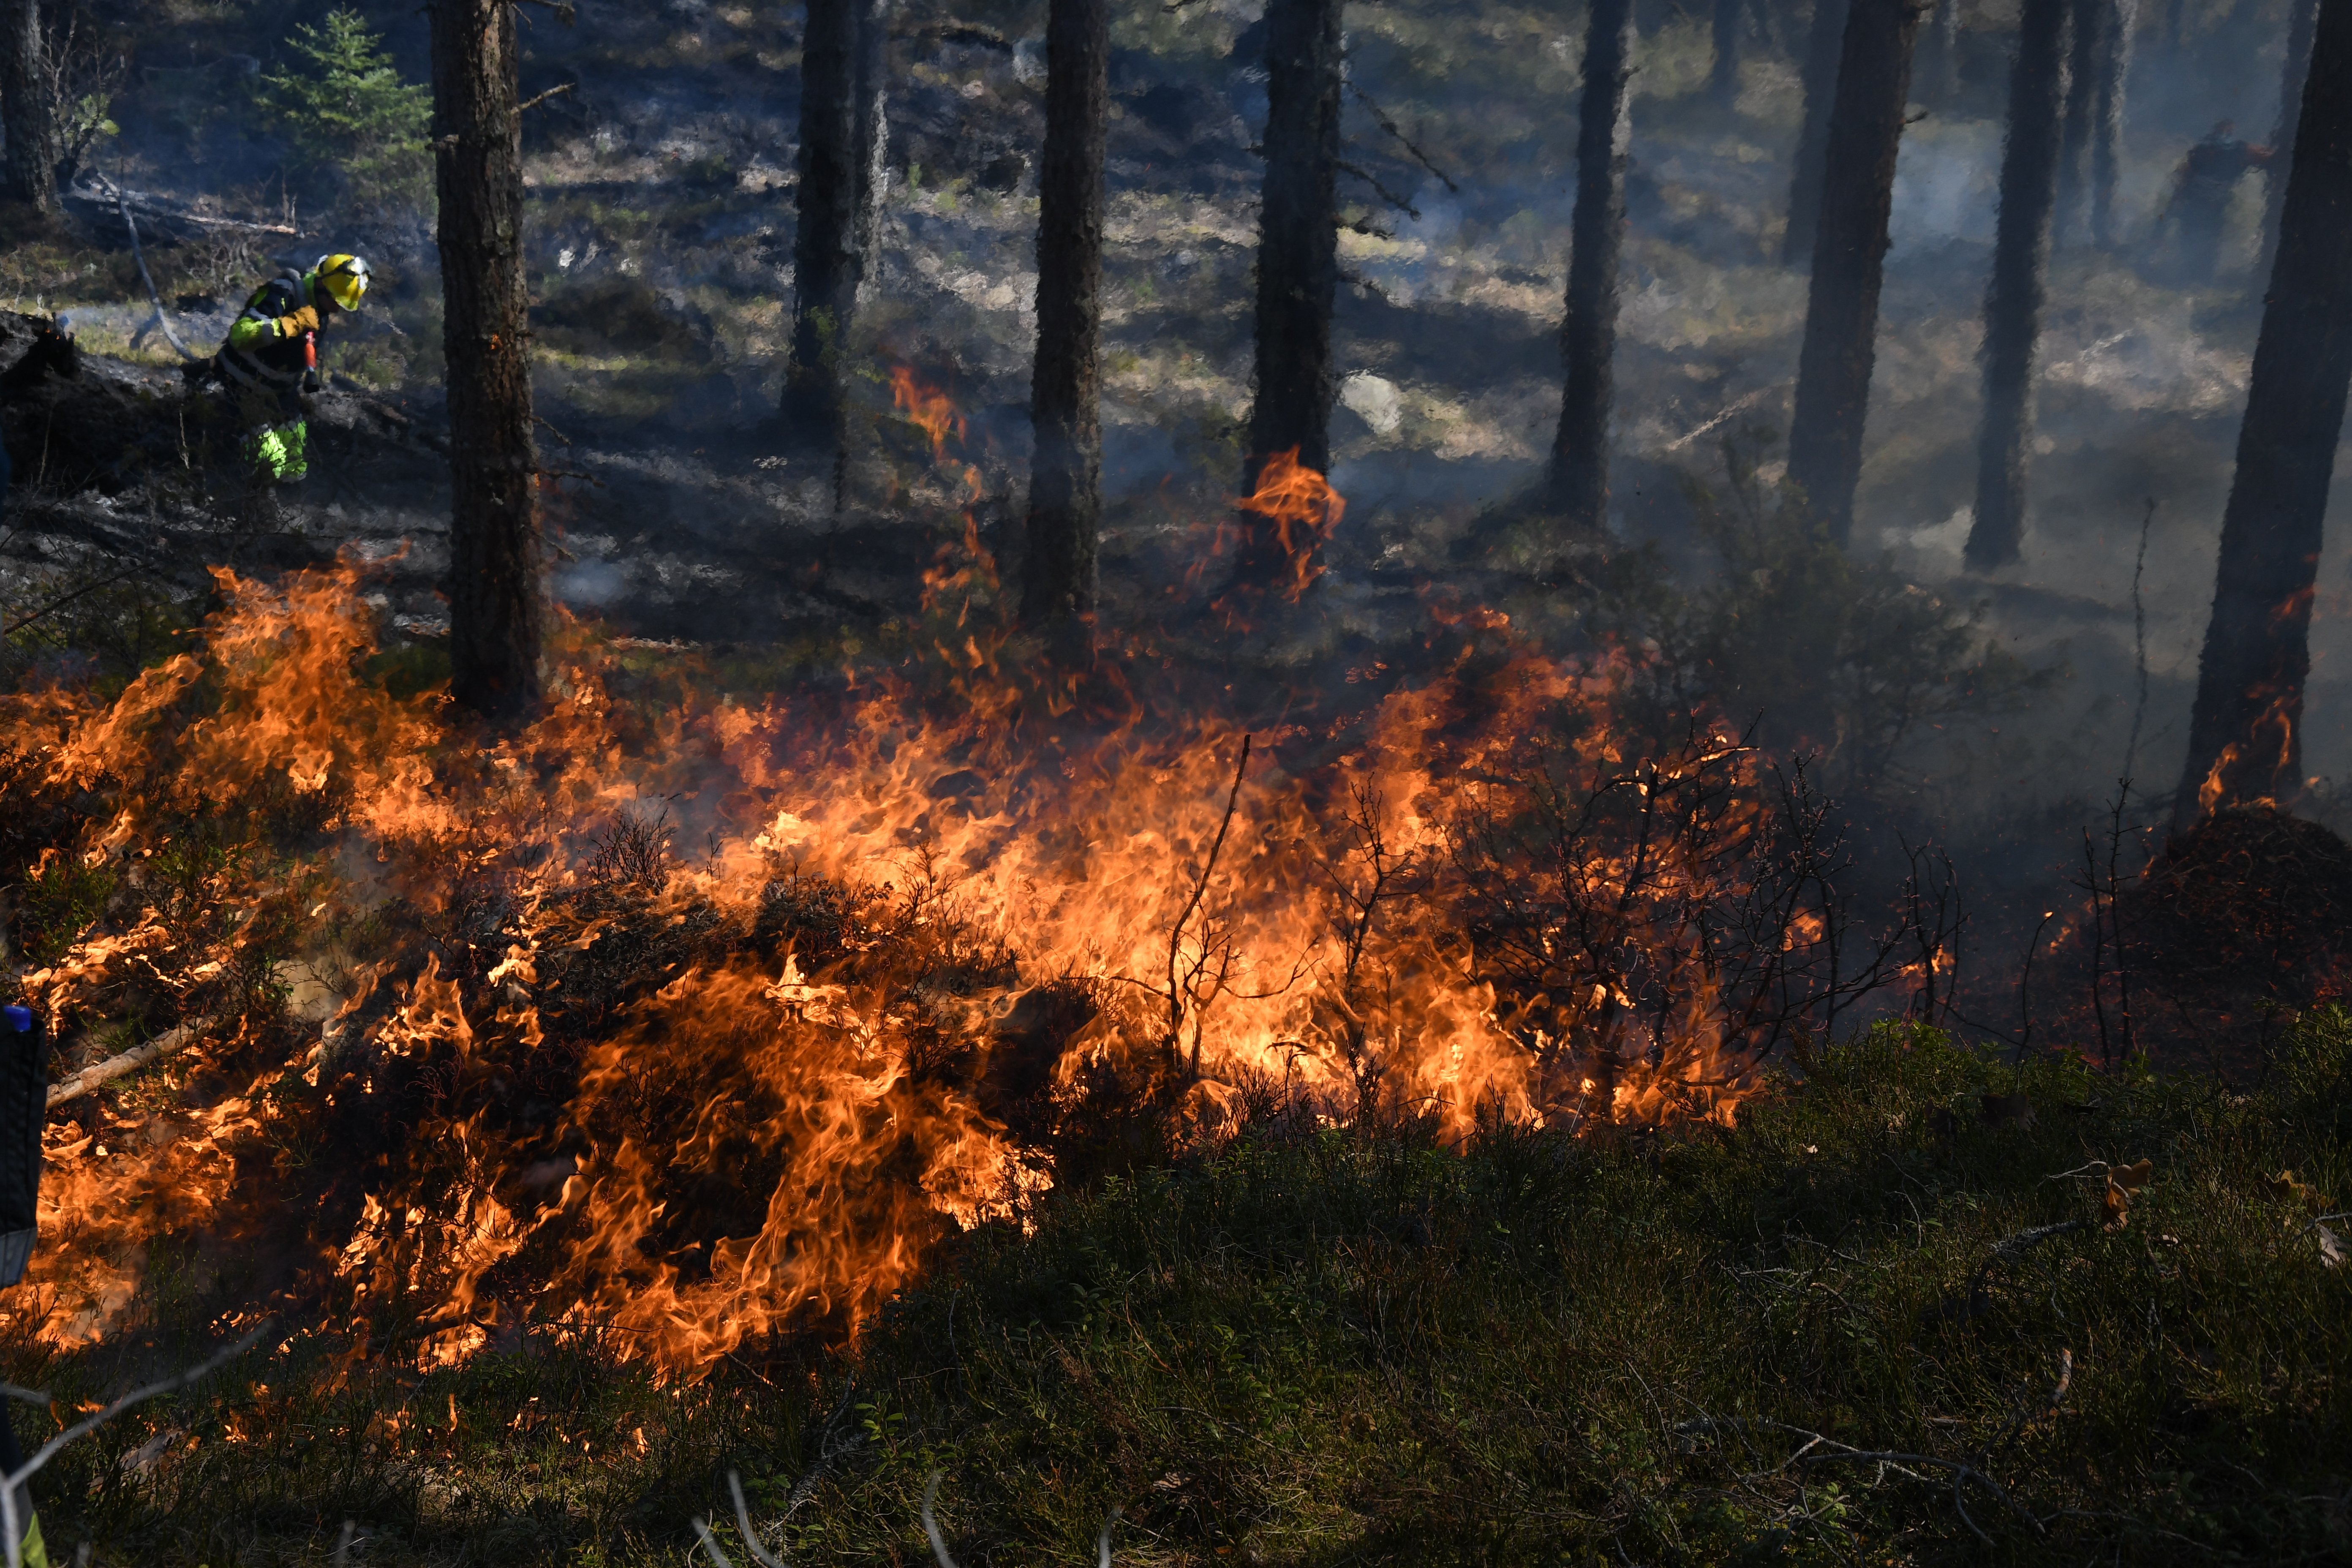 Ilden tok godt tak i tørr skogbunn. (Foto: Arne Heggland)